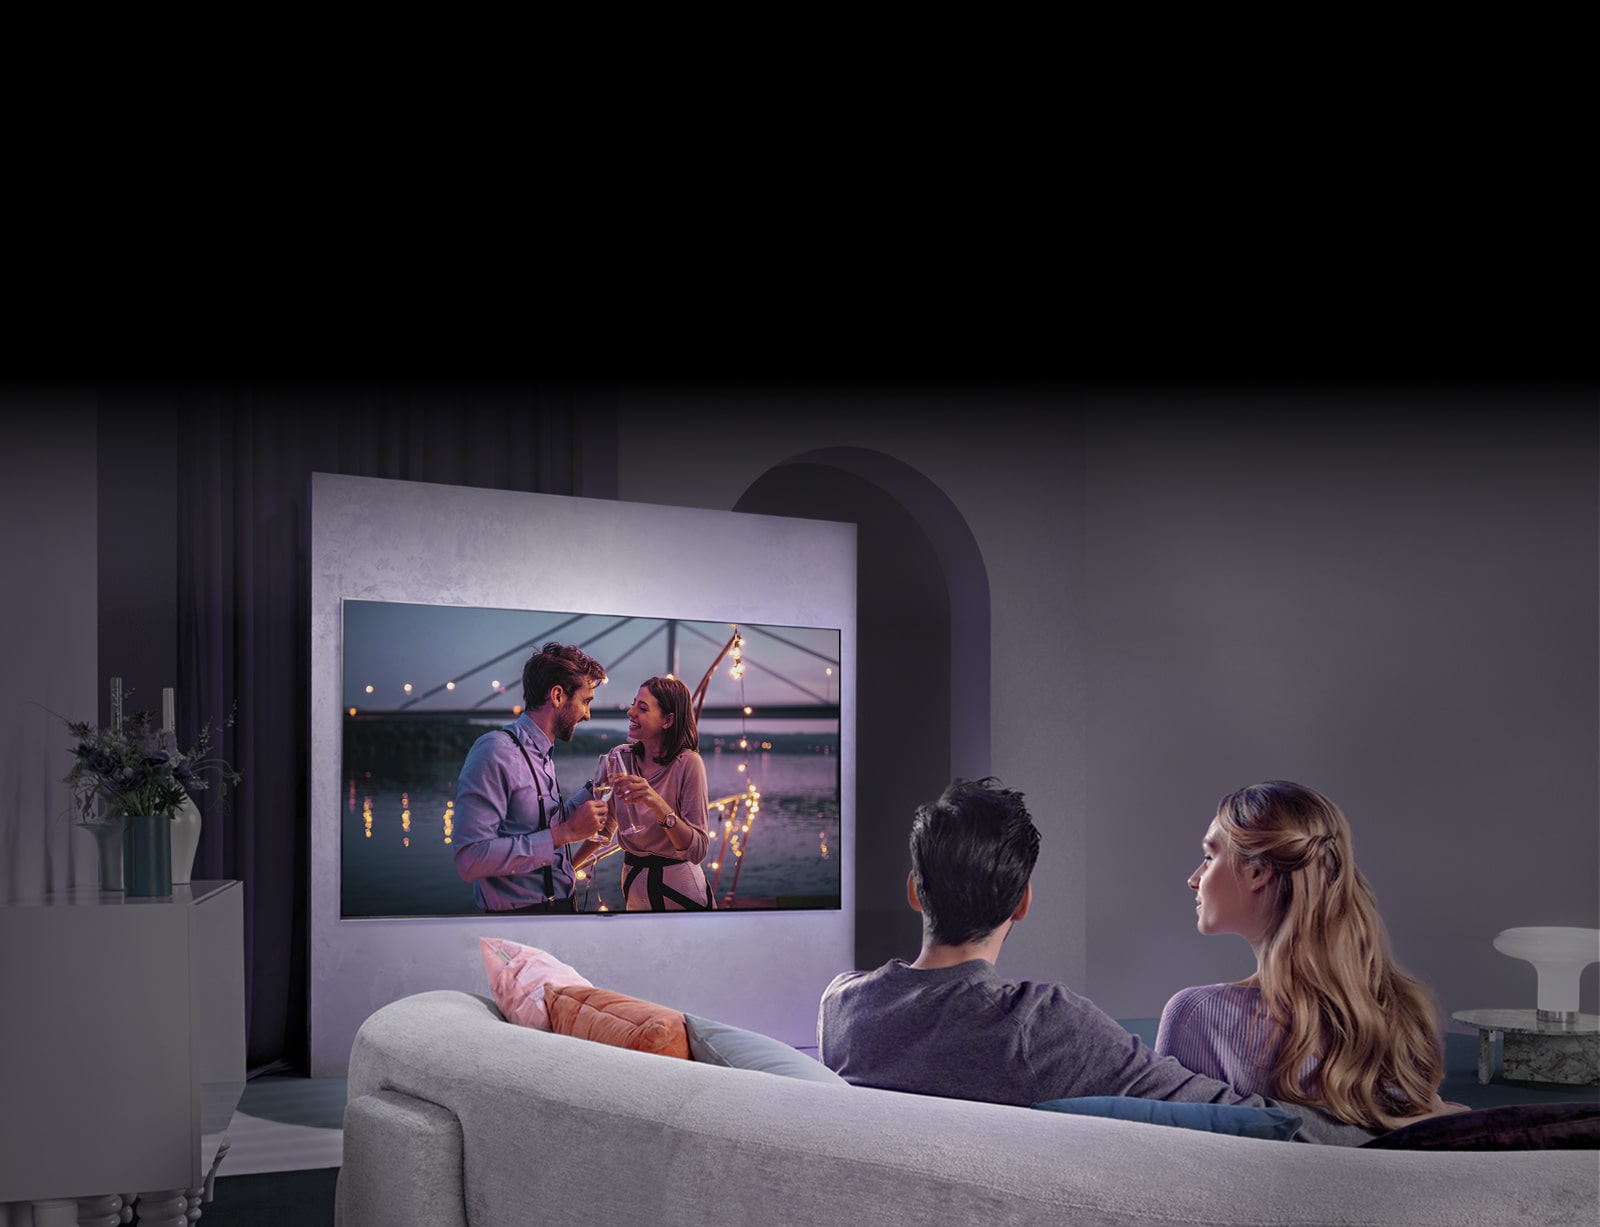 Una persona sentada en un sofá disfruta de una película en un gran televisor colgado en la pared.